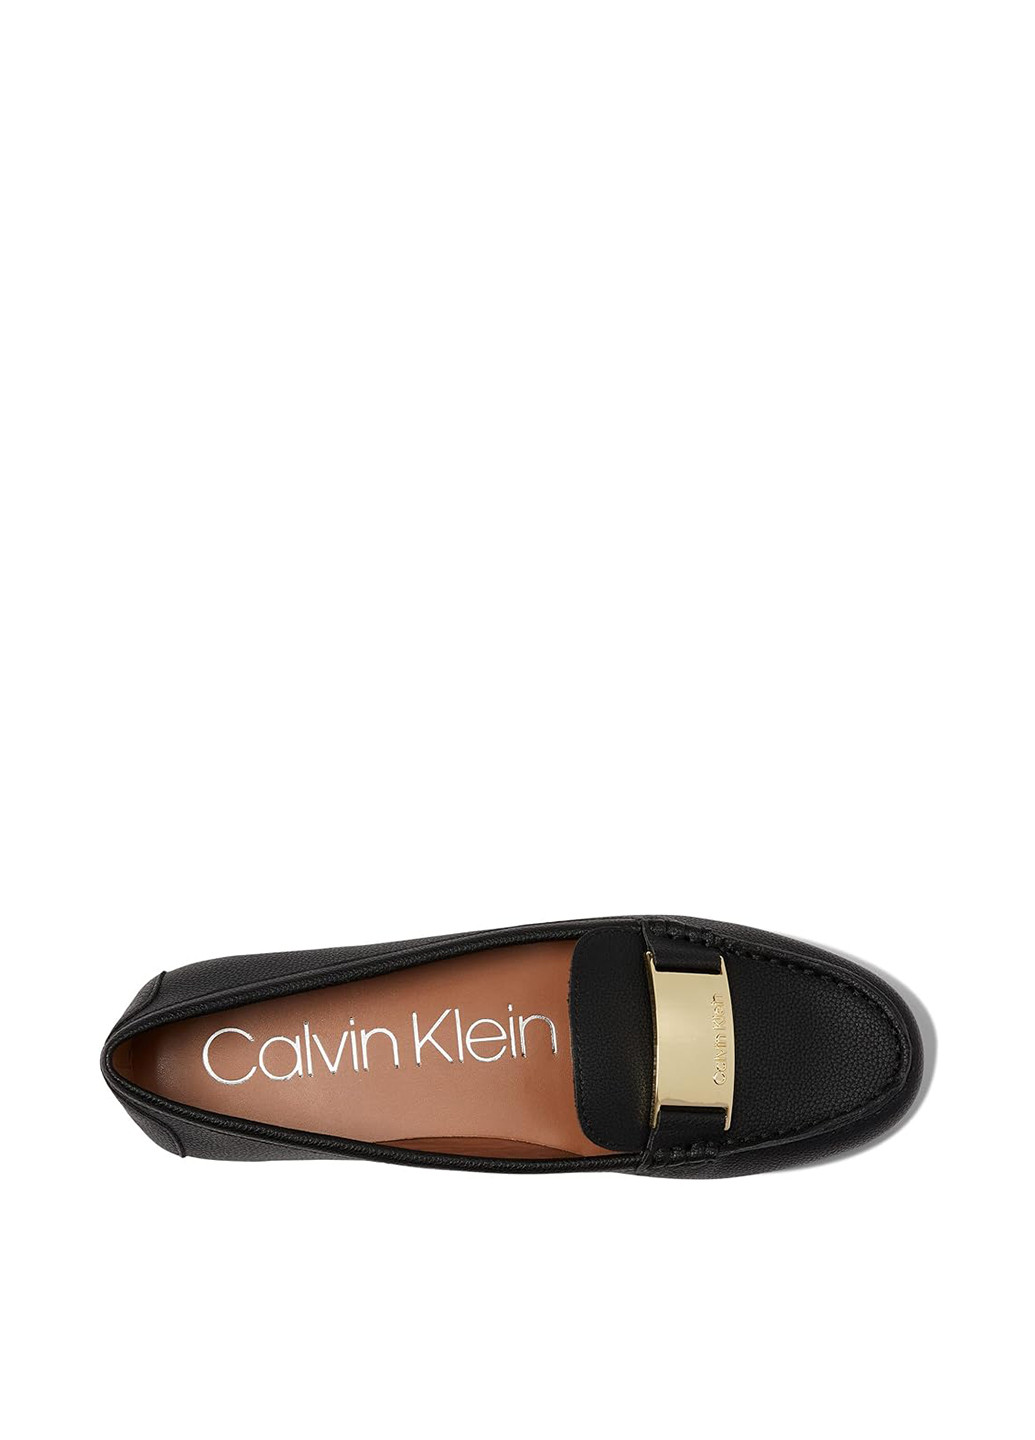 Туфли Calvin Klein без каблука